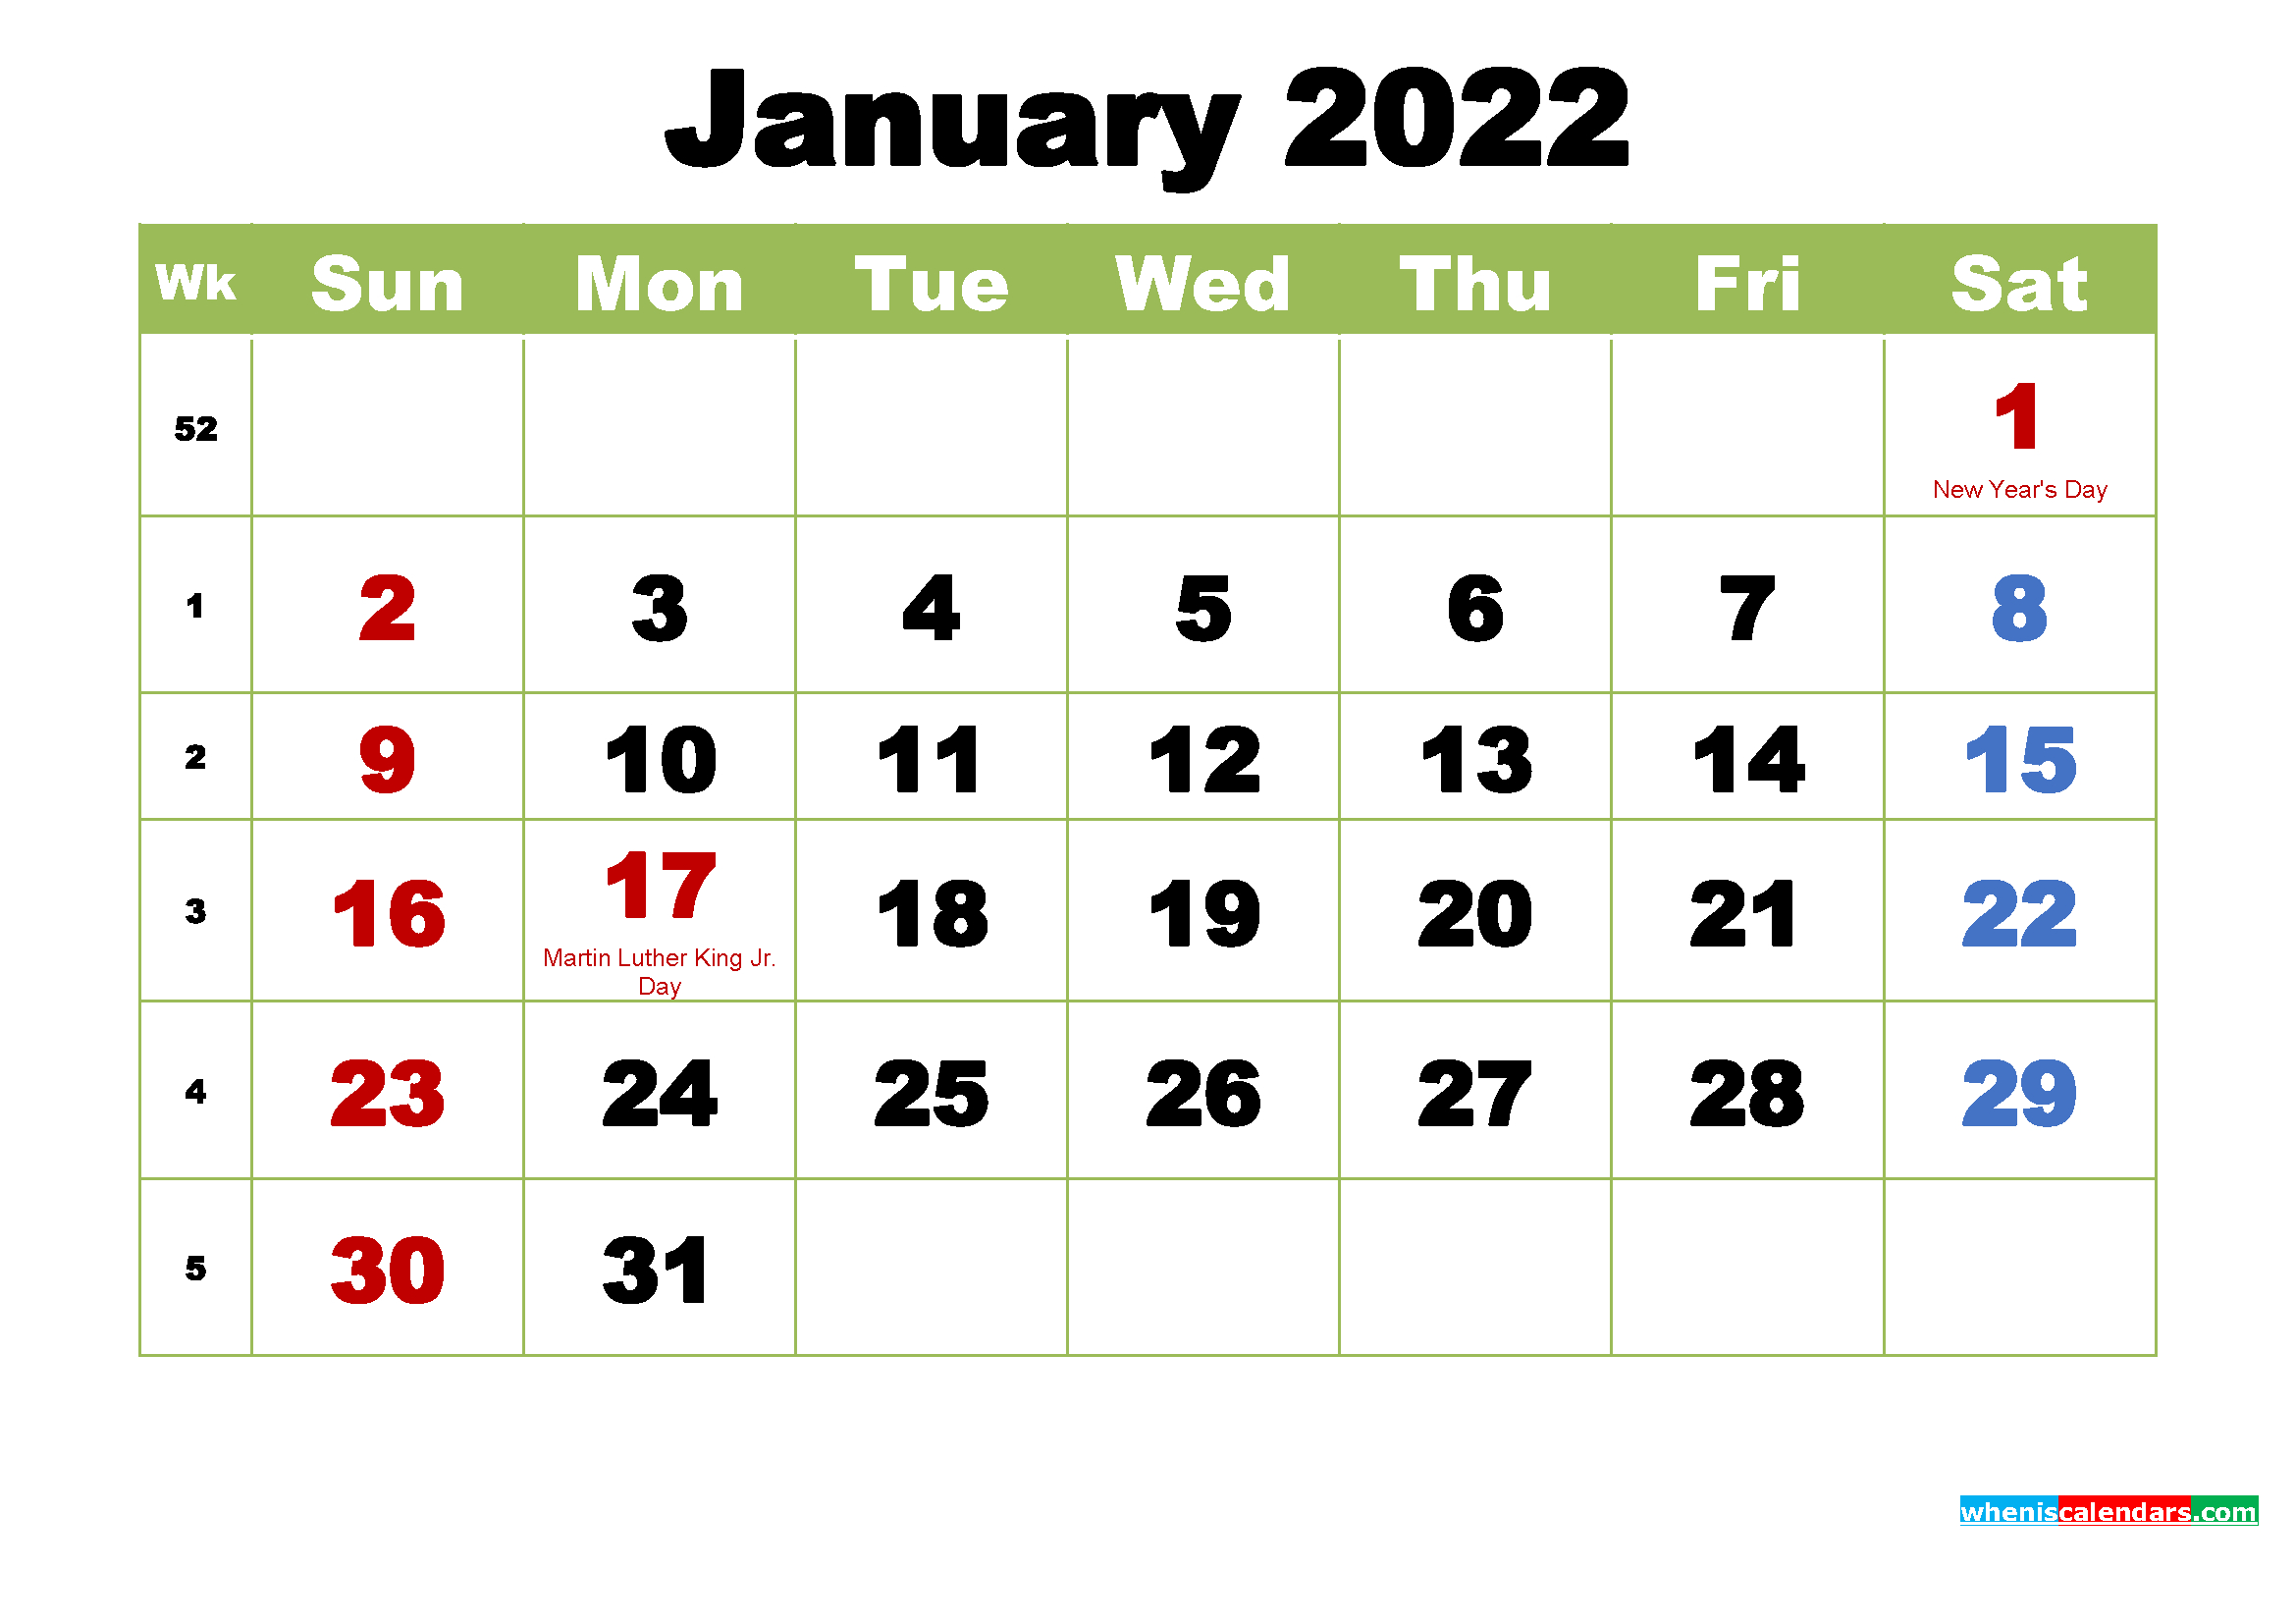 Catch Calendar In January 2022